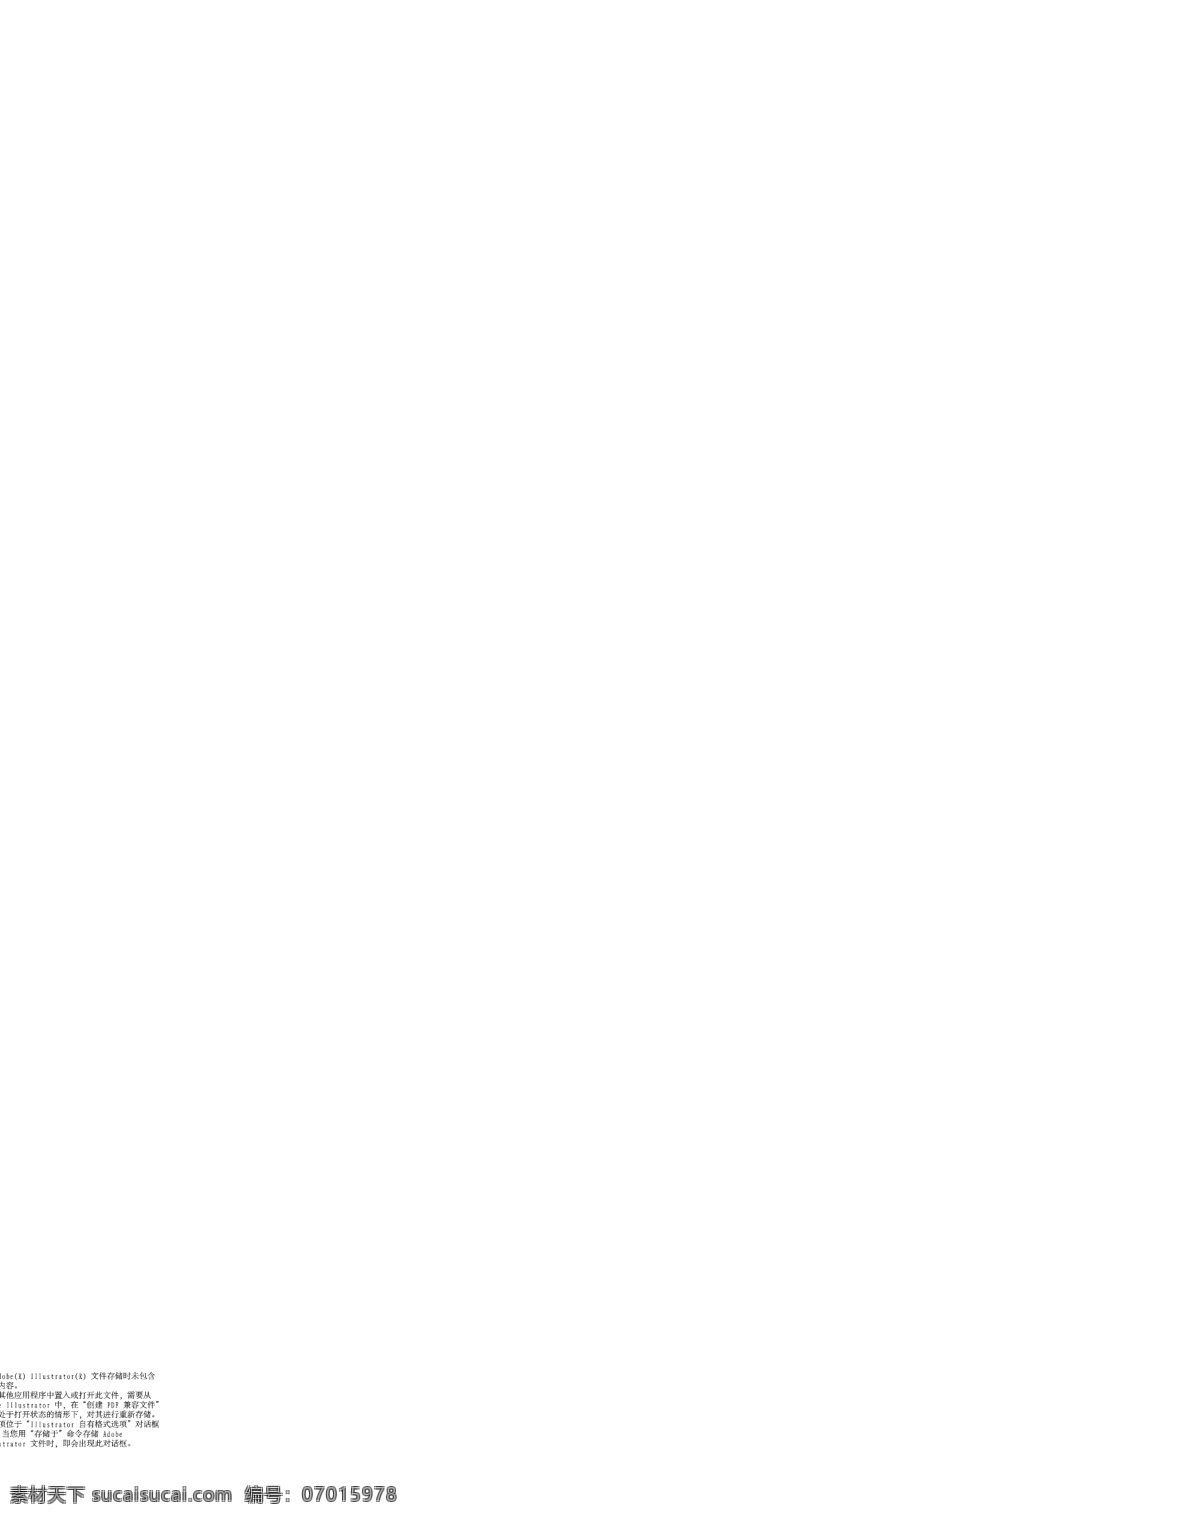 对联 春节 春节素材 春联 电信logo 对联矢量素材 福字 节日素材 金色边框 对联模板下载 矢量ai 矢量 矢量图 现代科技